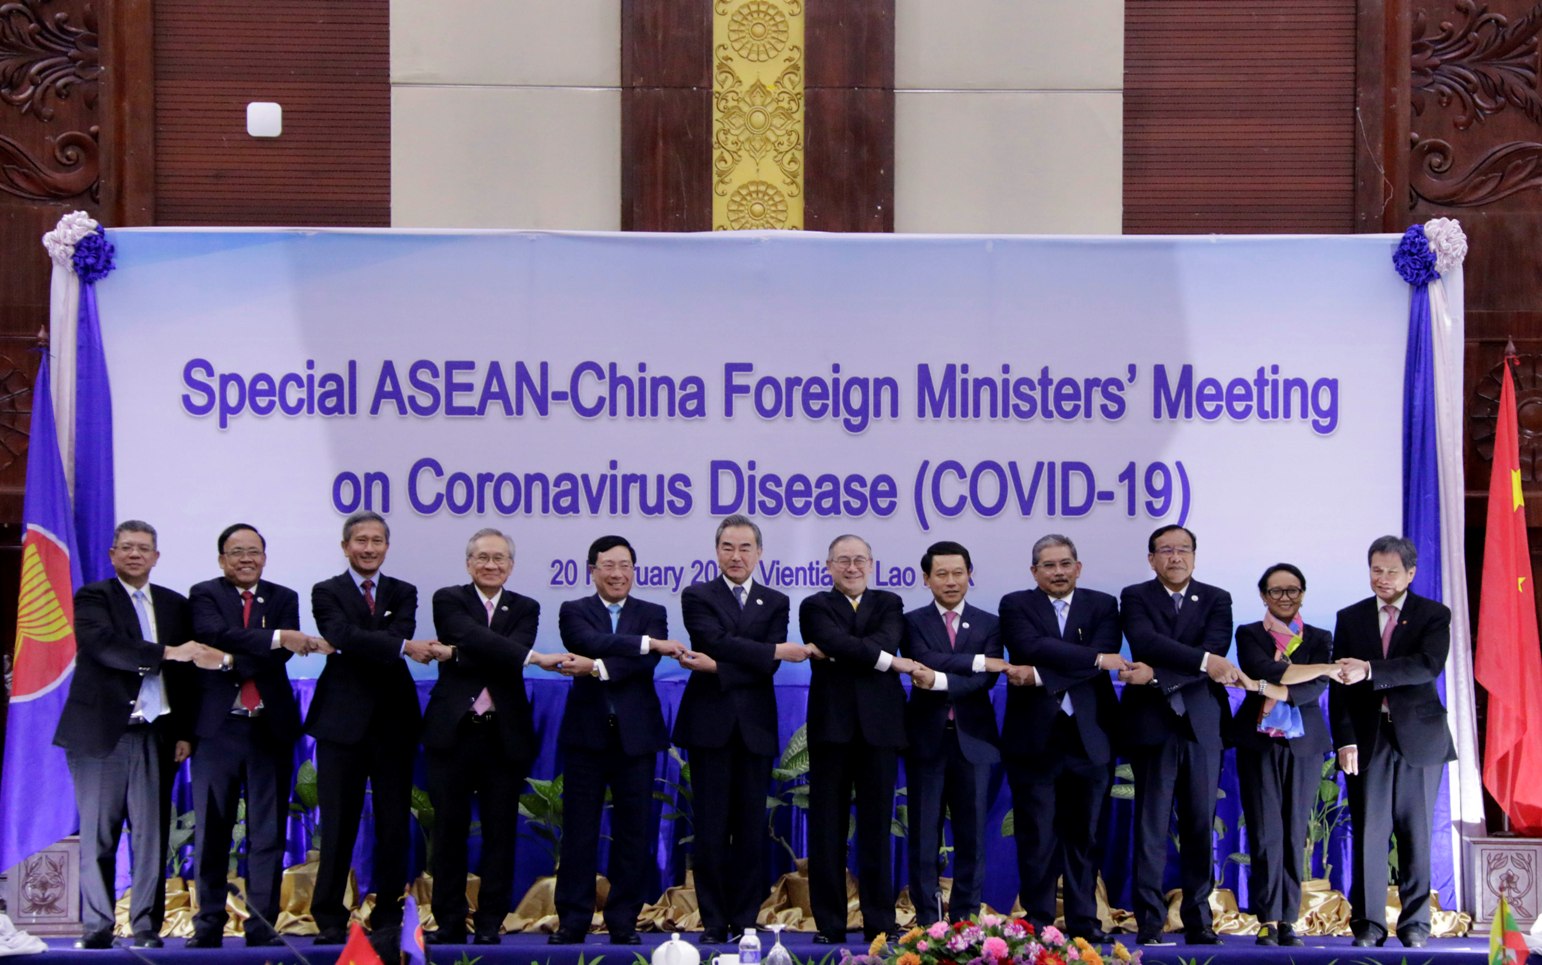 Hội nghị đặc biệt Hội đồng Điều phối ASEAN đã chia sẻ thông tin, trao đổi các biện pháp ứng phó dịch bệnh COVID-19. Các Bộ trưởng Ngoại giao ASEAN khẳng định tình đoàn kết và ủng hộ các nỗ lực của Chính phủ Trung Quốc trong ứng phó dịch bệnh. Ảnh: Bộ Ngoại giao